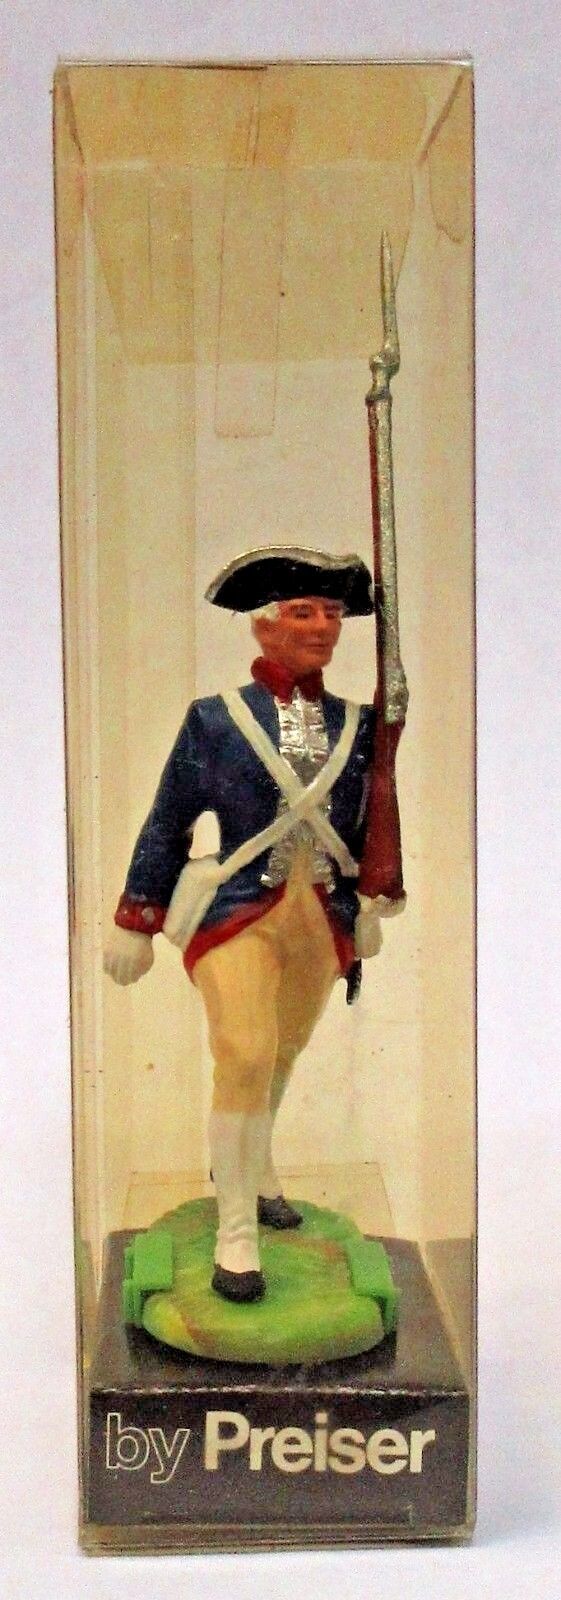 Elastolin Preiser #7334 REVOLUTIONARY WAR MARCHING 7cm 1:24 figure soldier MIB